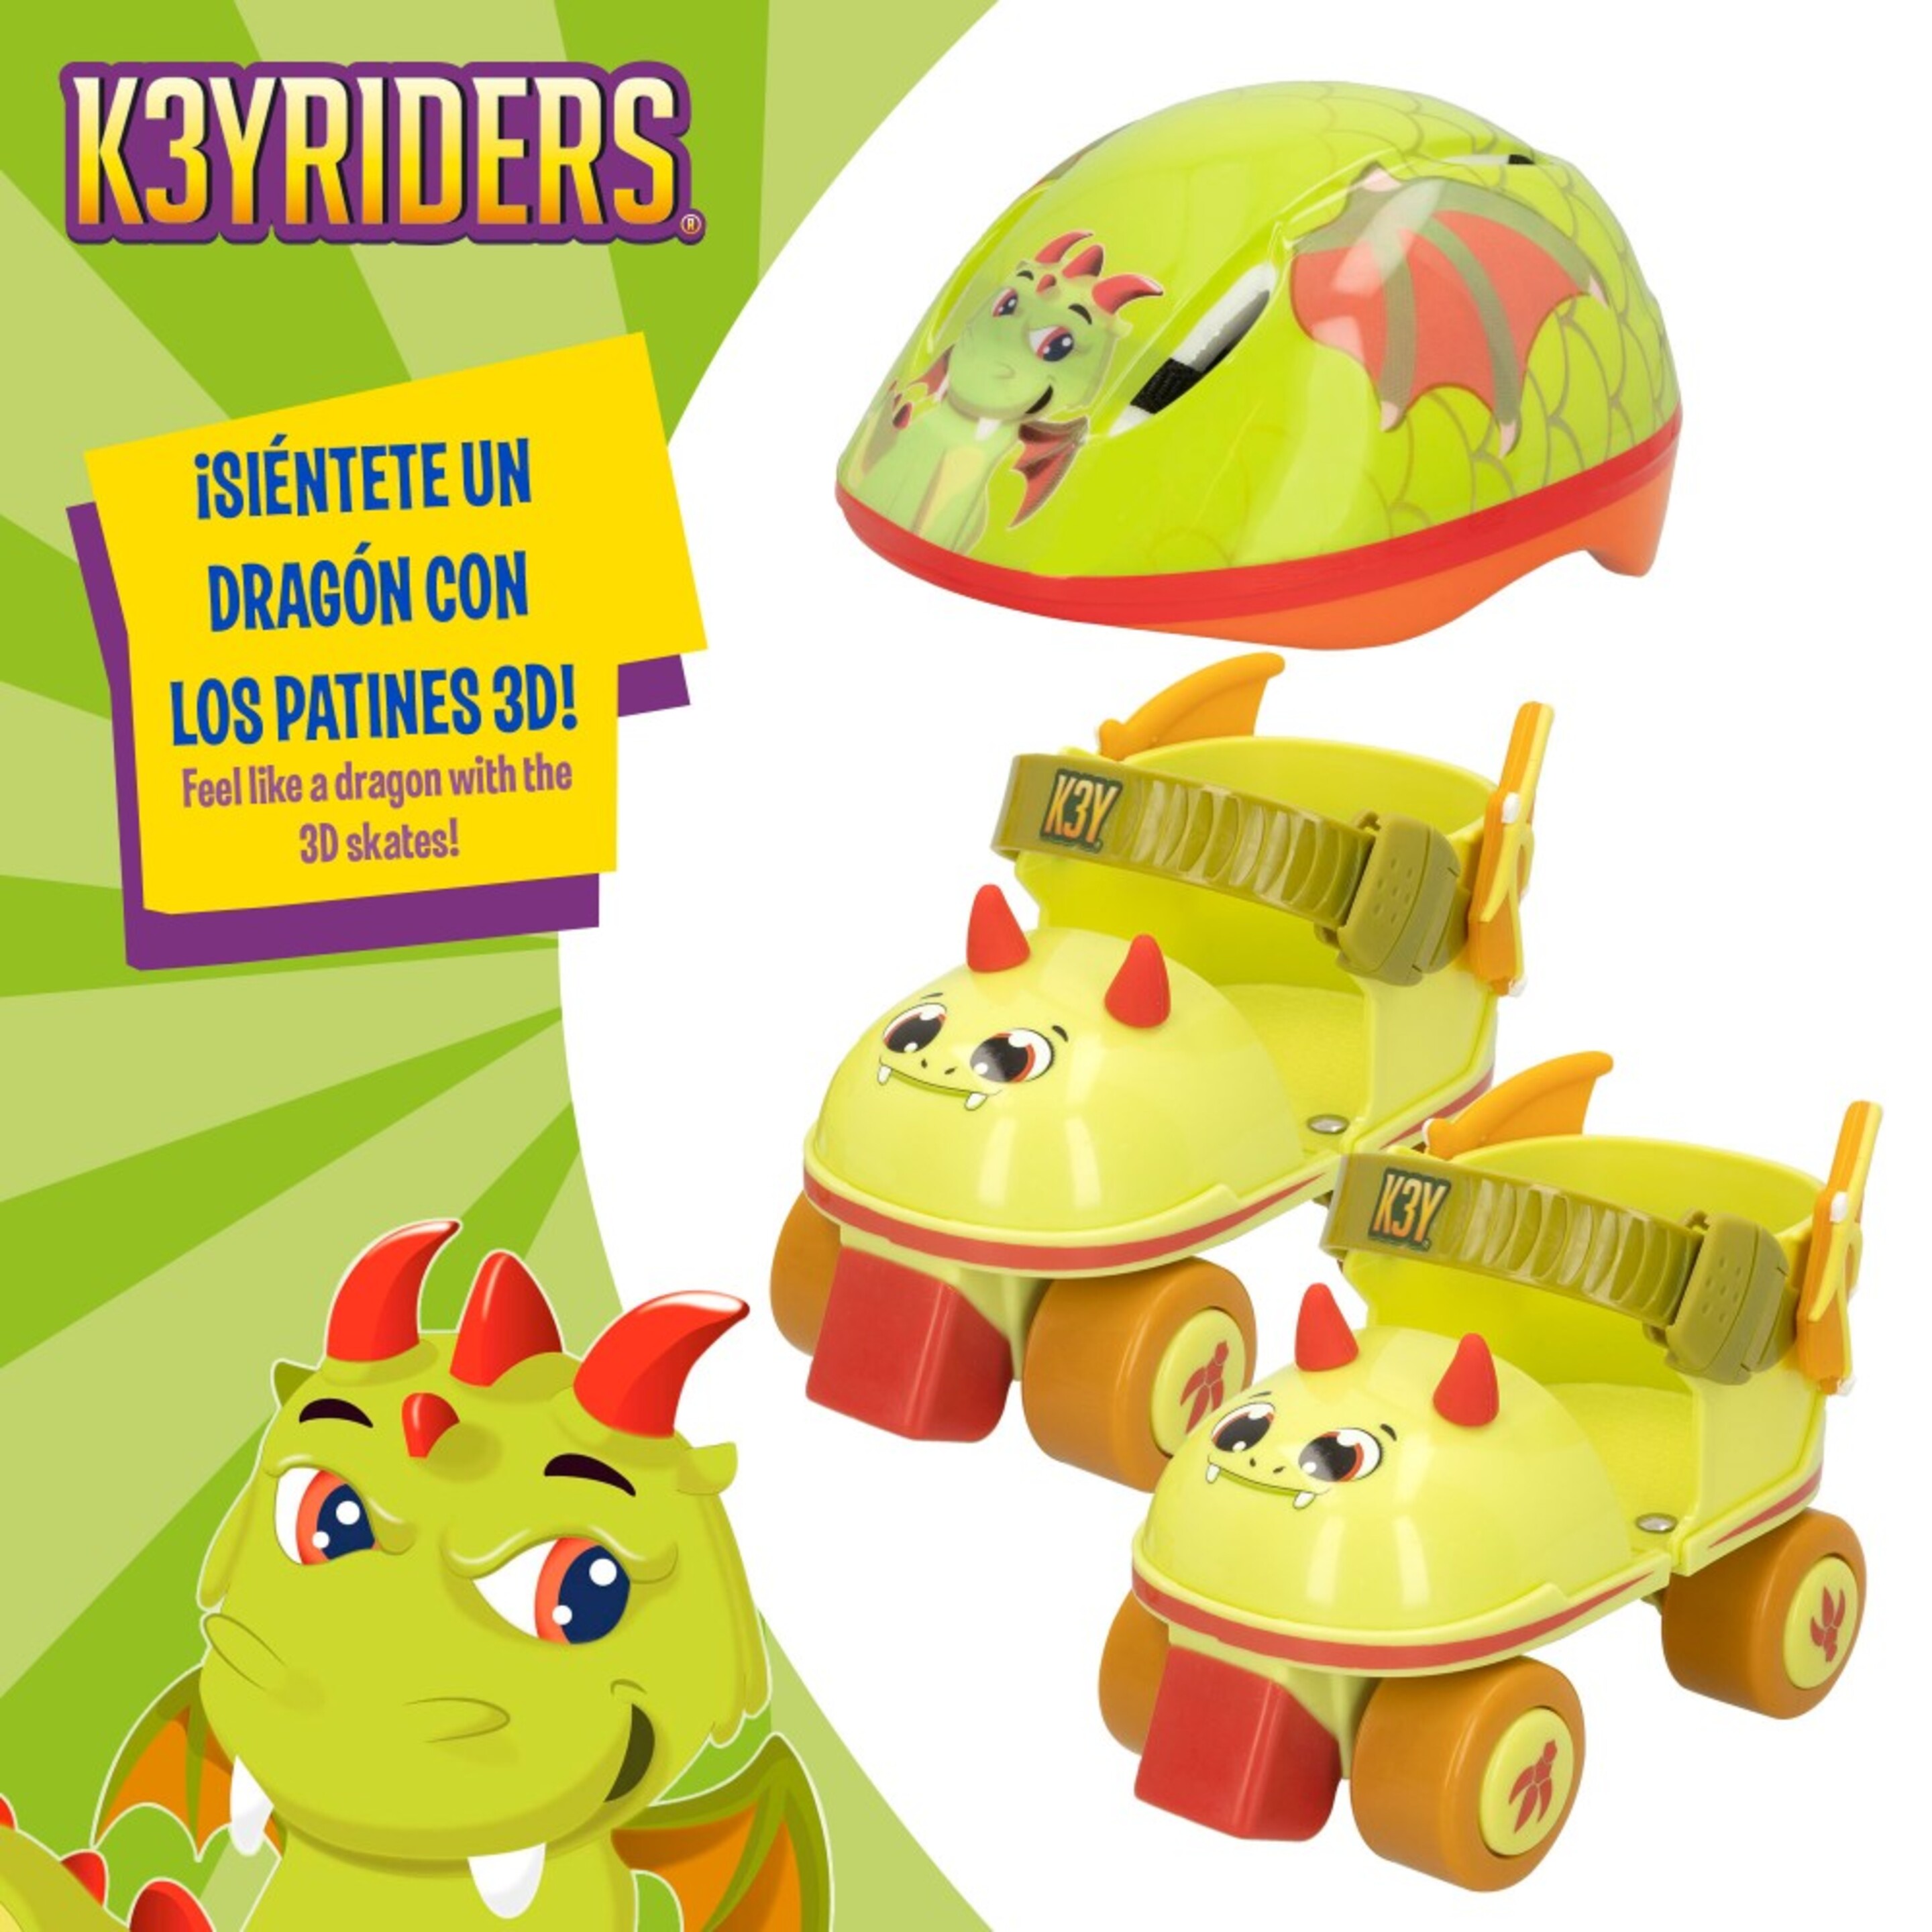 Keyriders-combo Patines Y Casco 3d Dragon - Multicolor  MKP